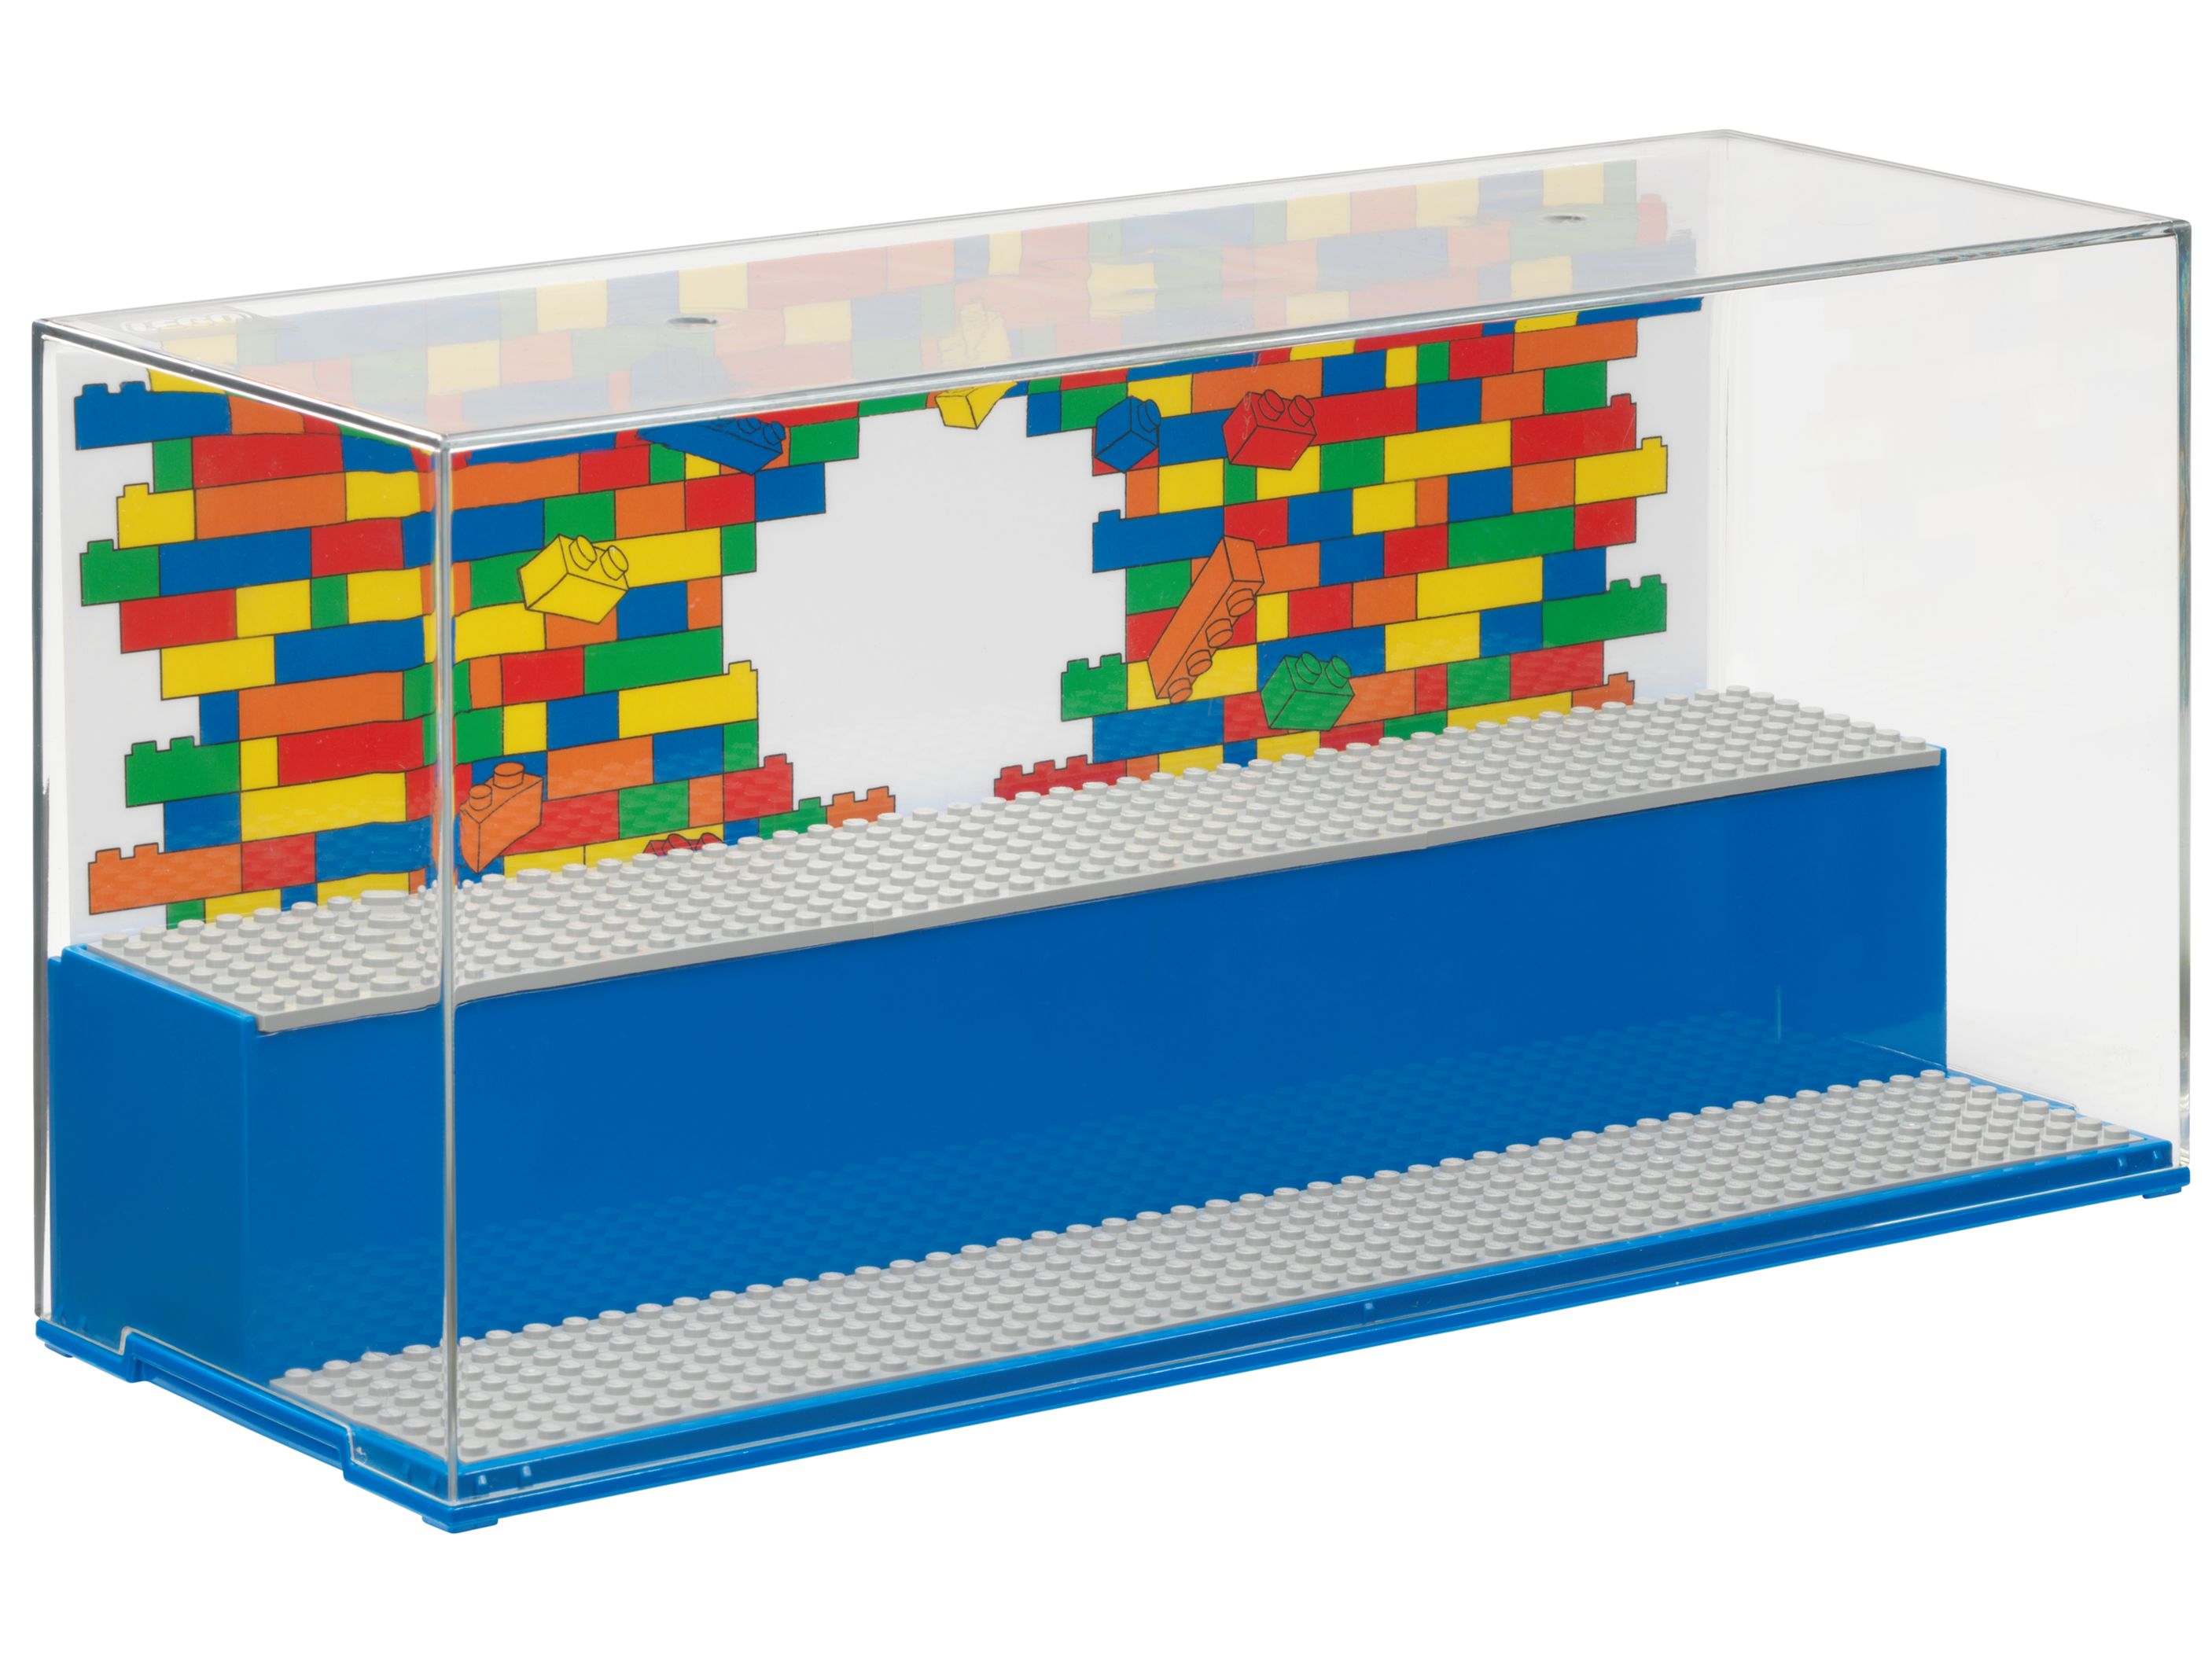 LEGO Gear 5006157 LEGO® Spiel- und Schaukasten LEGO_5006157_alt3.jpg